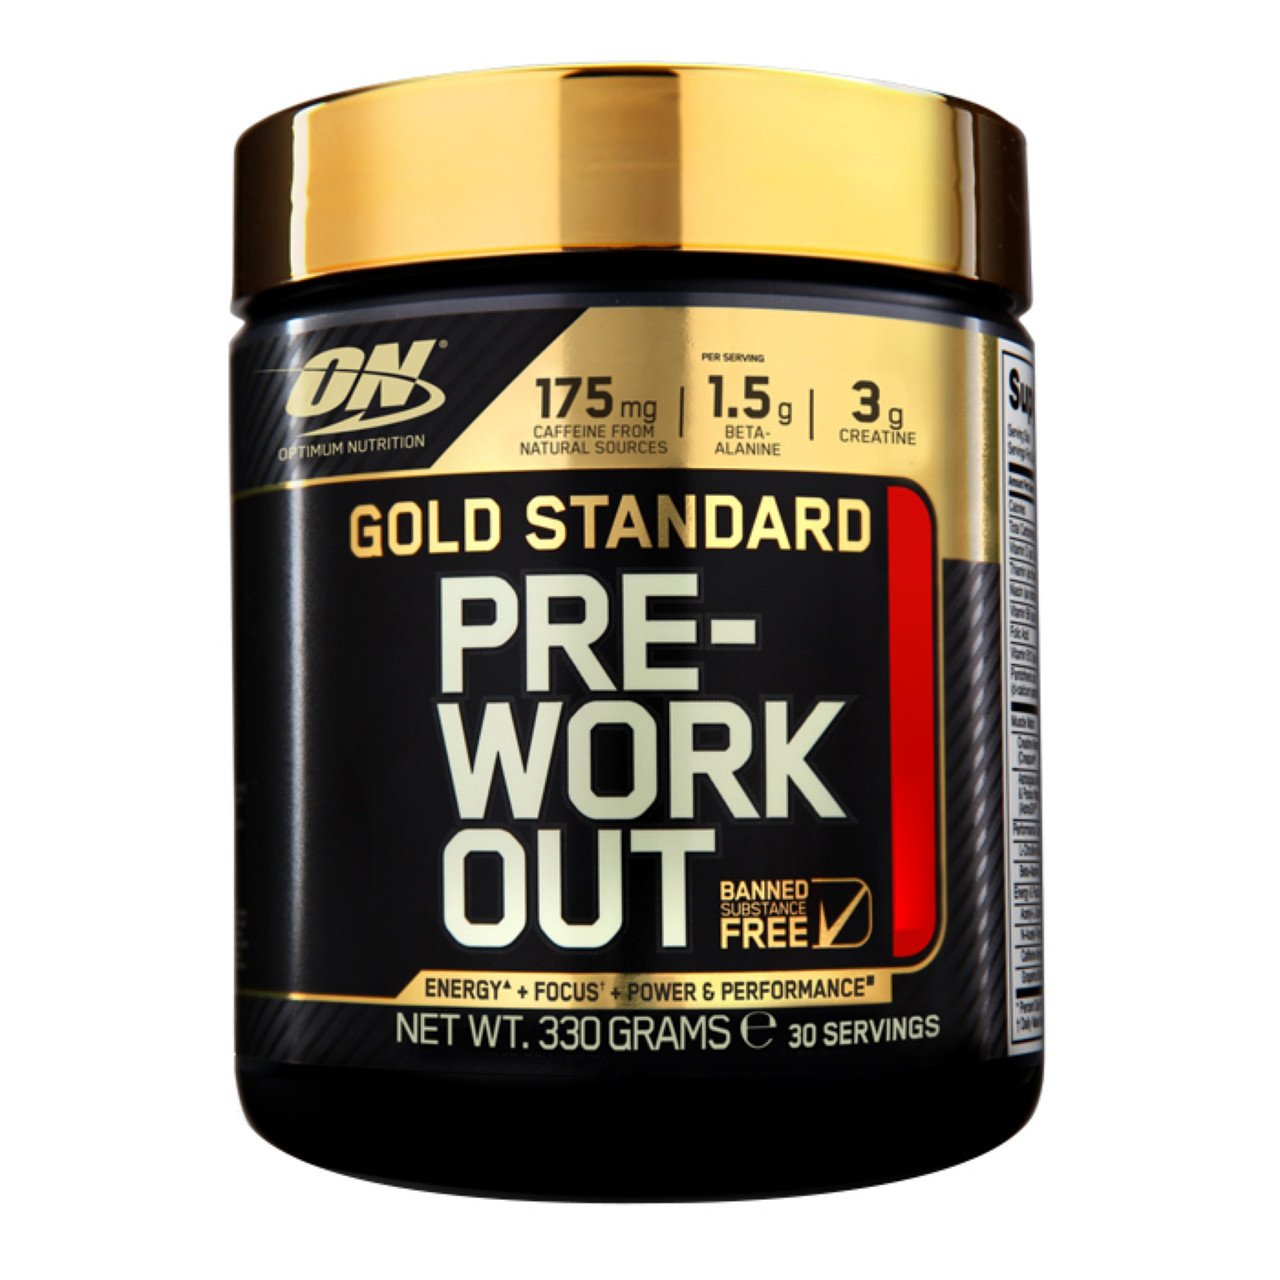 Предтренировочный комплекс Optimum Gold Standard Pre Workout, 330 грамм Фруктовый пунш,  мл, Optimum Nutrition. Предтренировочный комплекс. Энергия и выносливость 